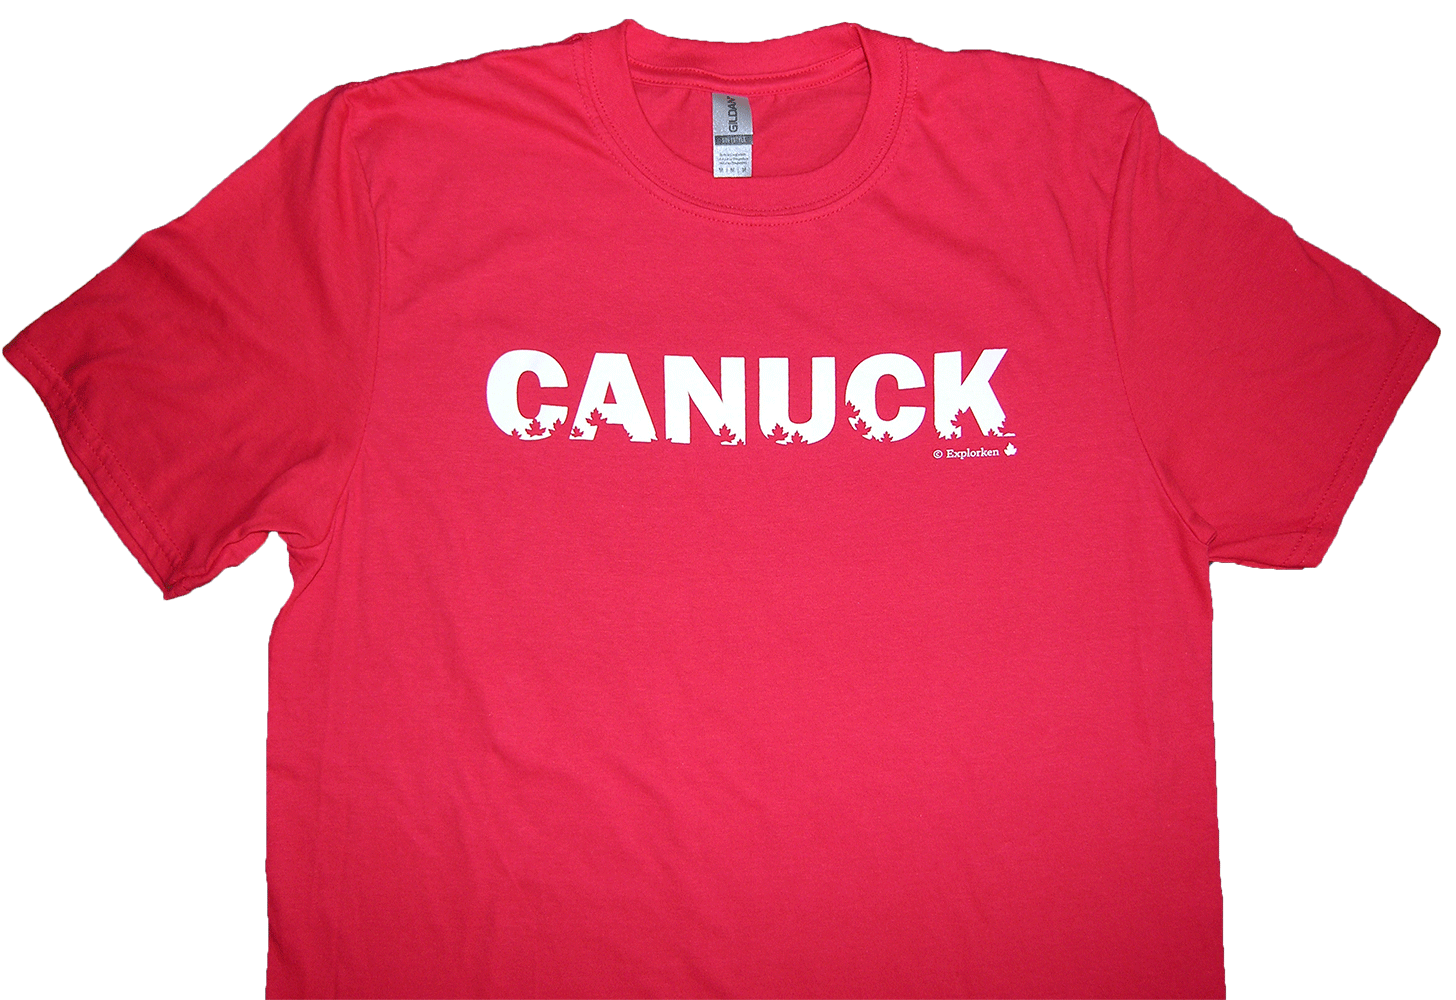 Canuck t-shirt